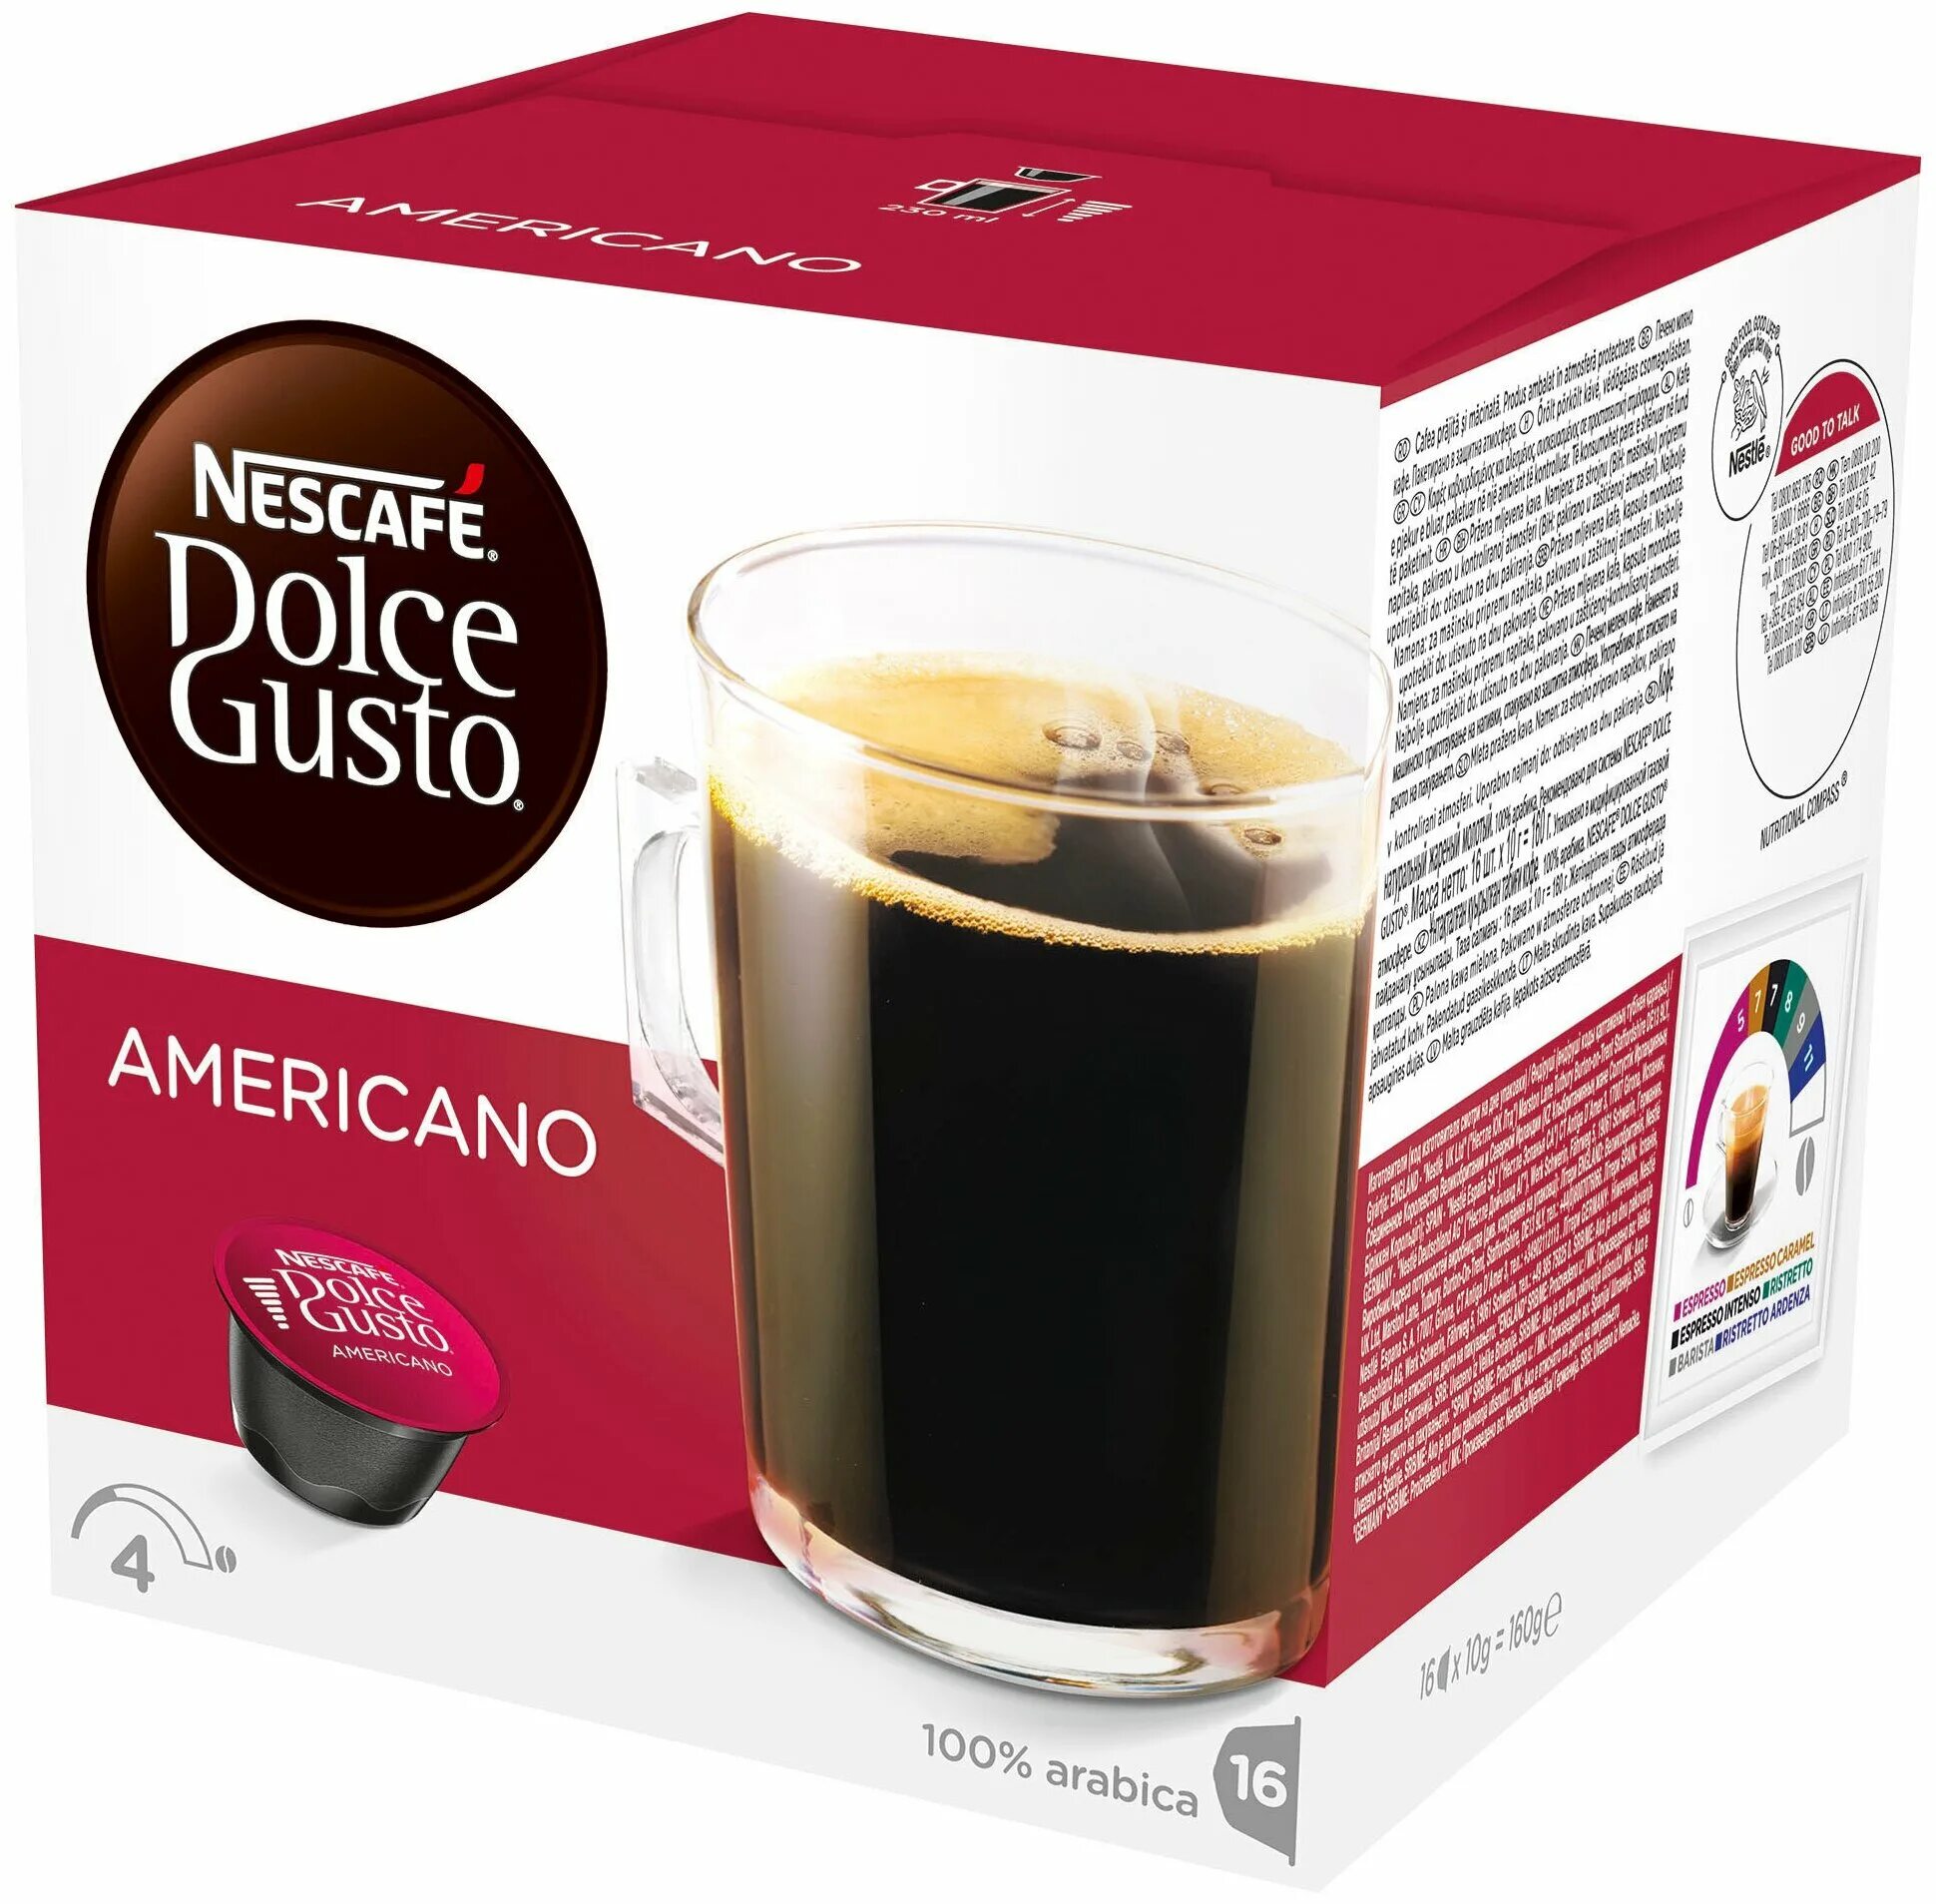 Купить кофе в капсулах для кофемашины. Дольче густо американо капсулы. Nescafe Dolce gusto капсулы americano. Dolce gusto капсулы американо. Кофе в капсулах Nescafe Dolce gusto americano (16 капс.).